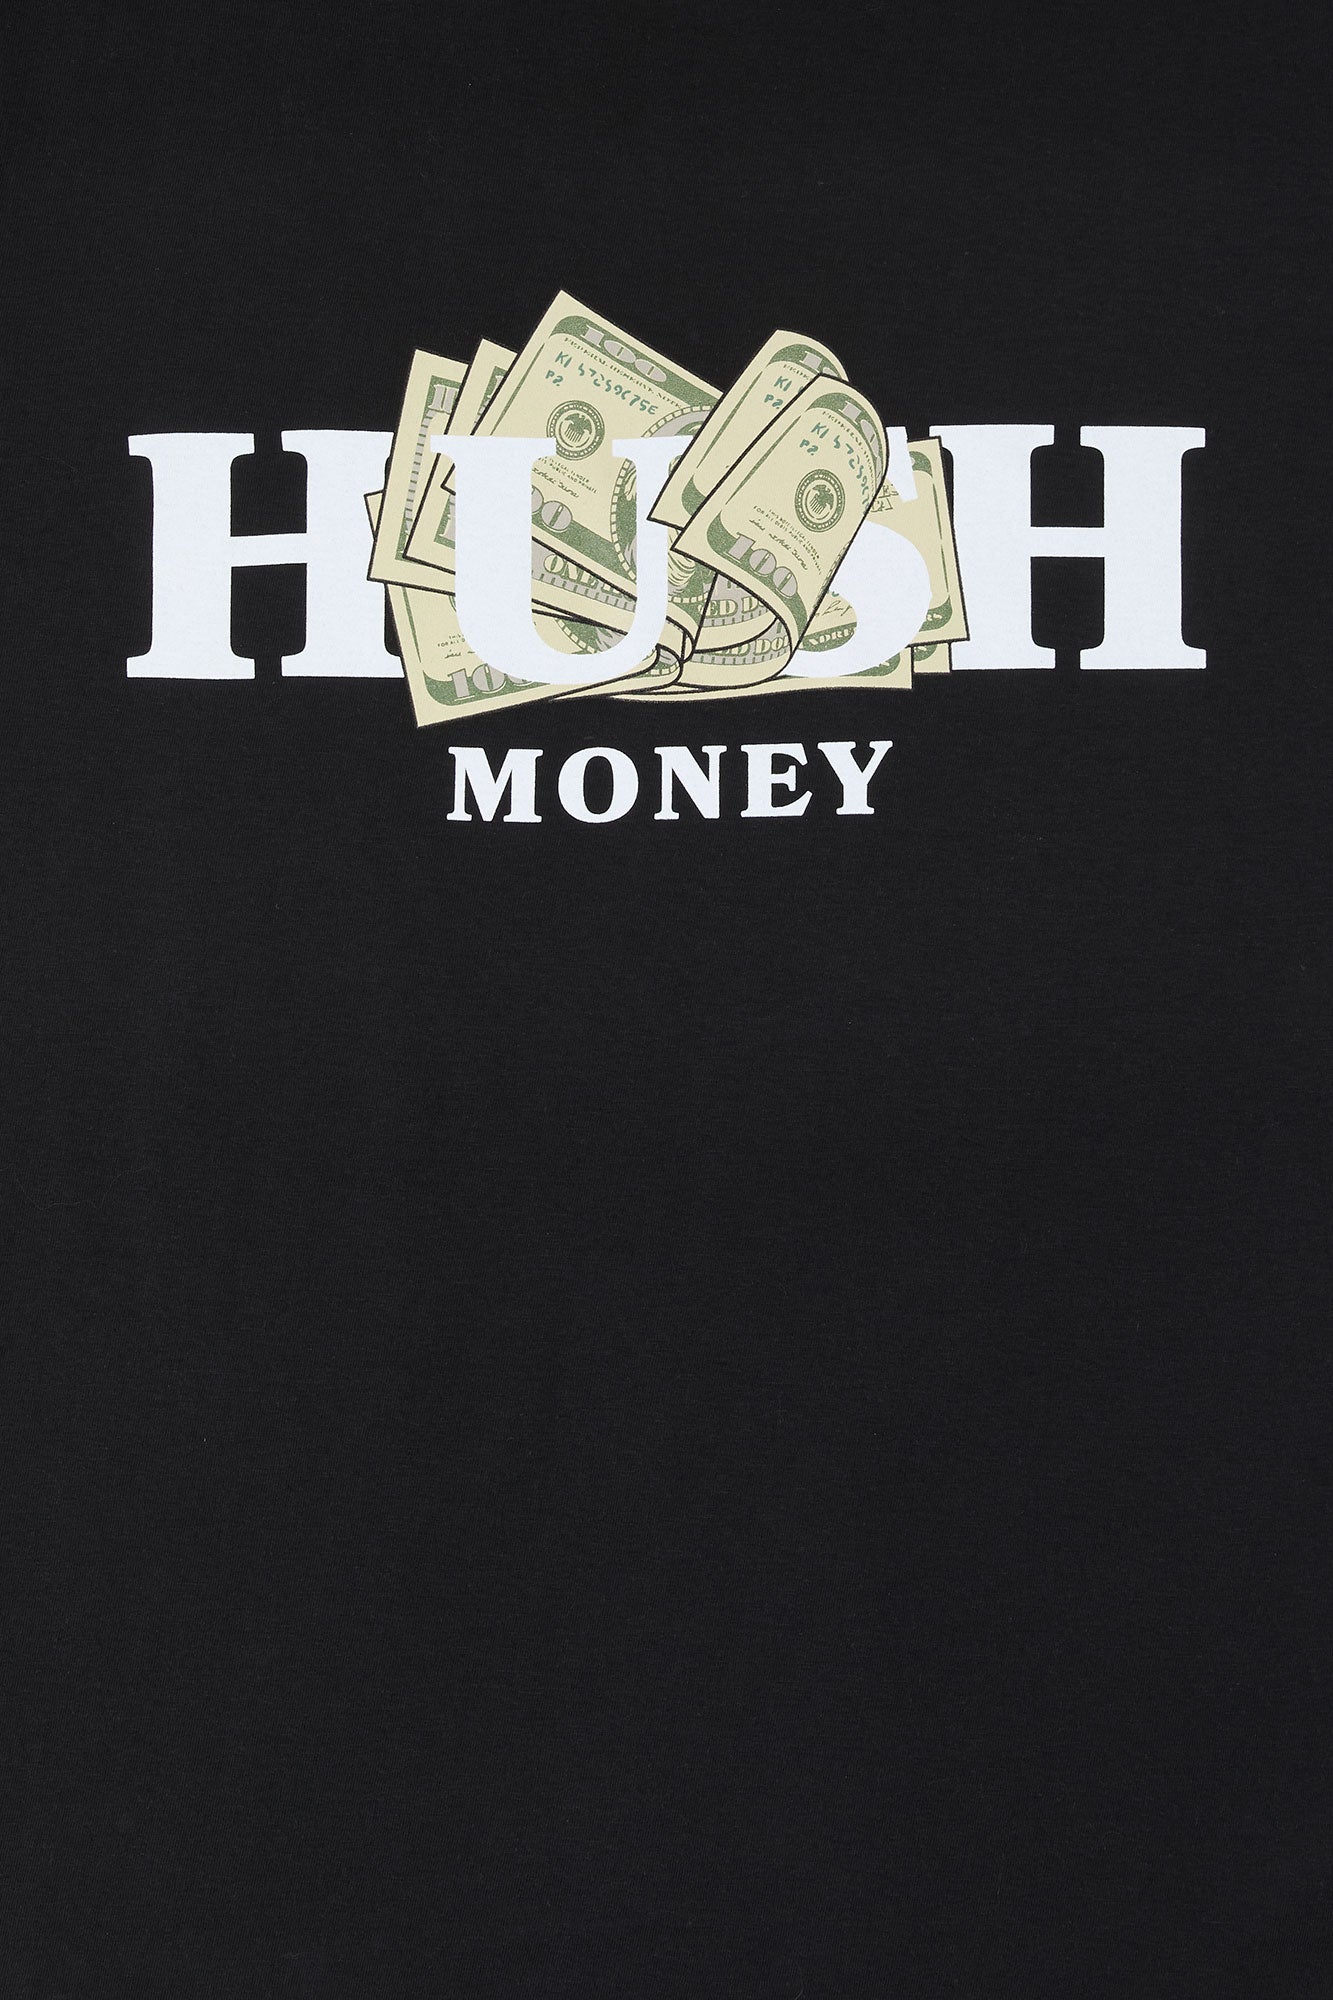 Hush Money Graphic T-Shirt